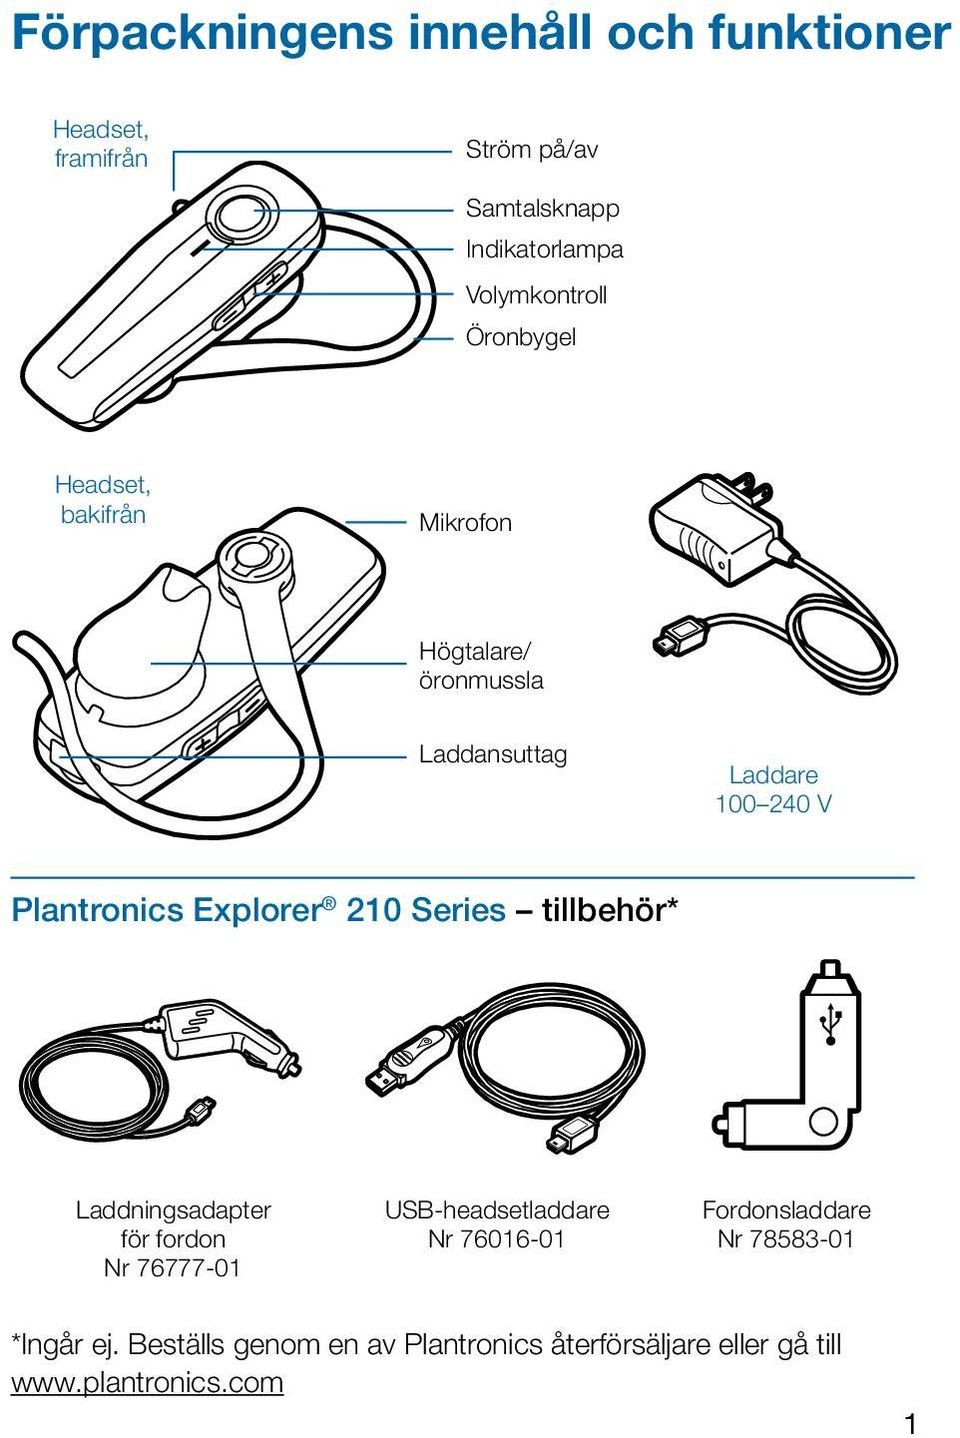 Plantronics Explorer 210 Series tillbehör* Laddningsadapter för fordon Nr 76777-01 USB-headsetladdare Nr